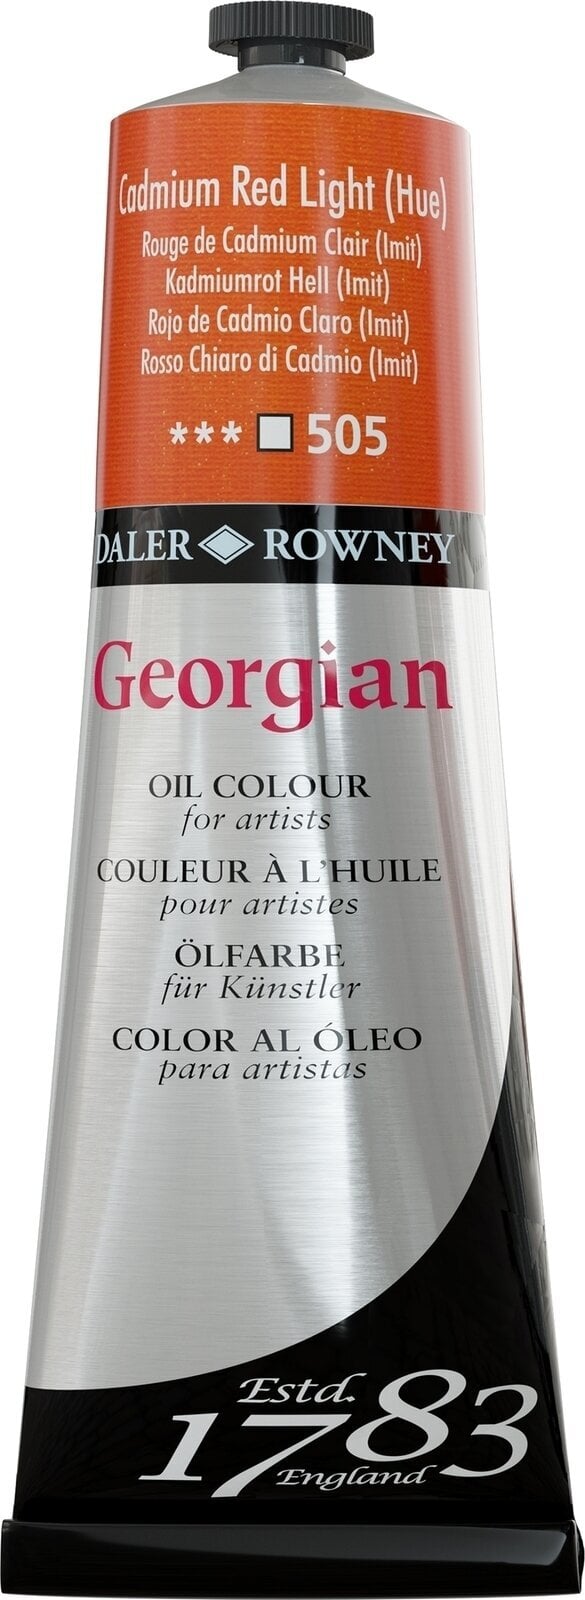 Tempera ad olio Daler Rowney Georgian Pittura a olio Cadmium Red Light Hue 225 ml 1 pz